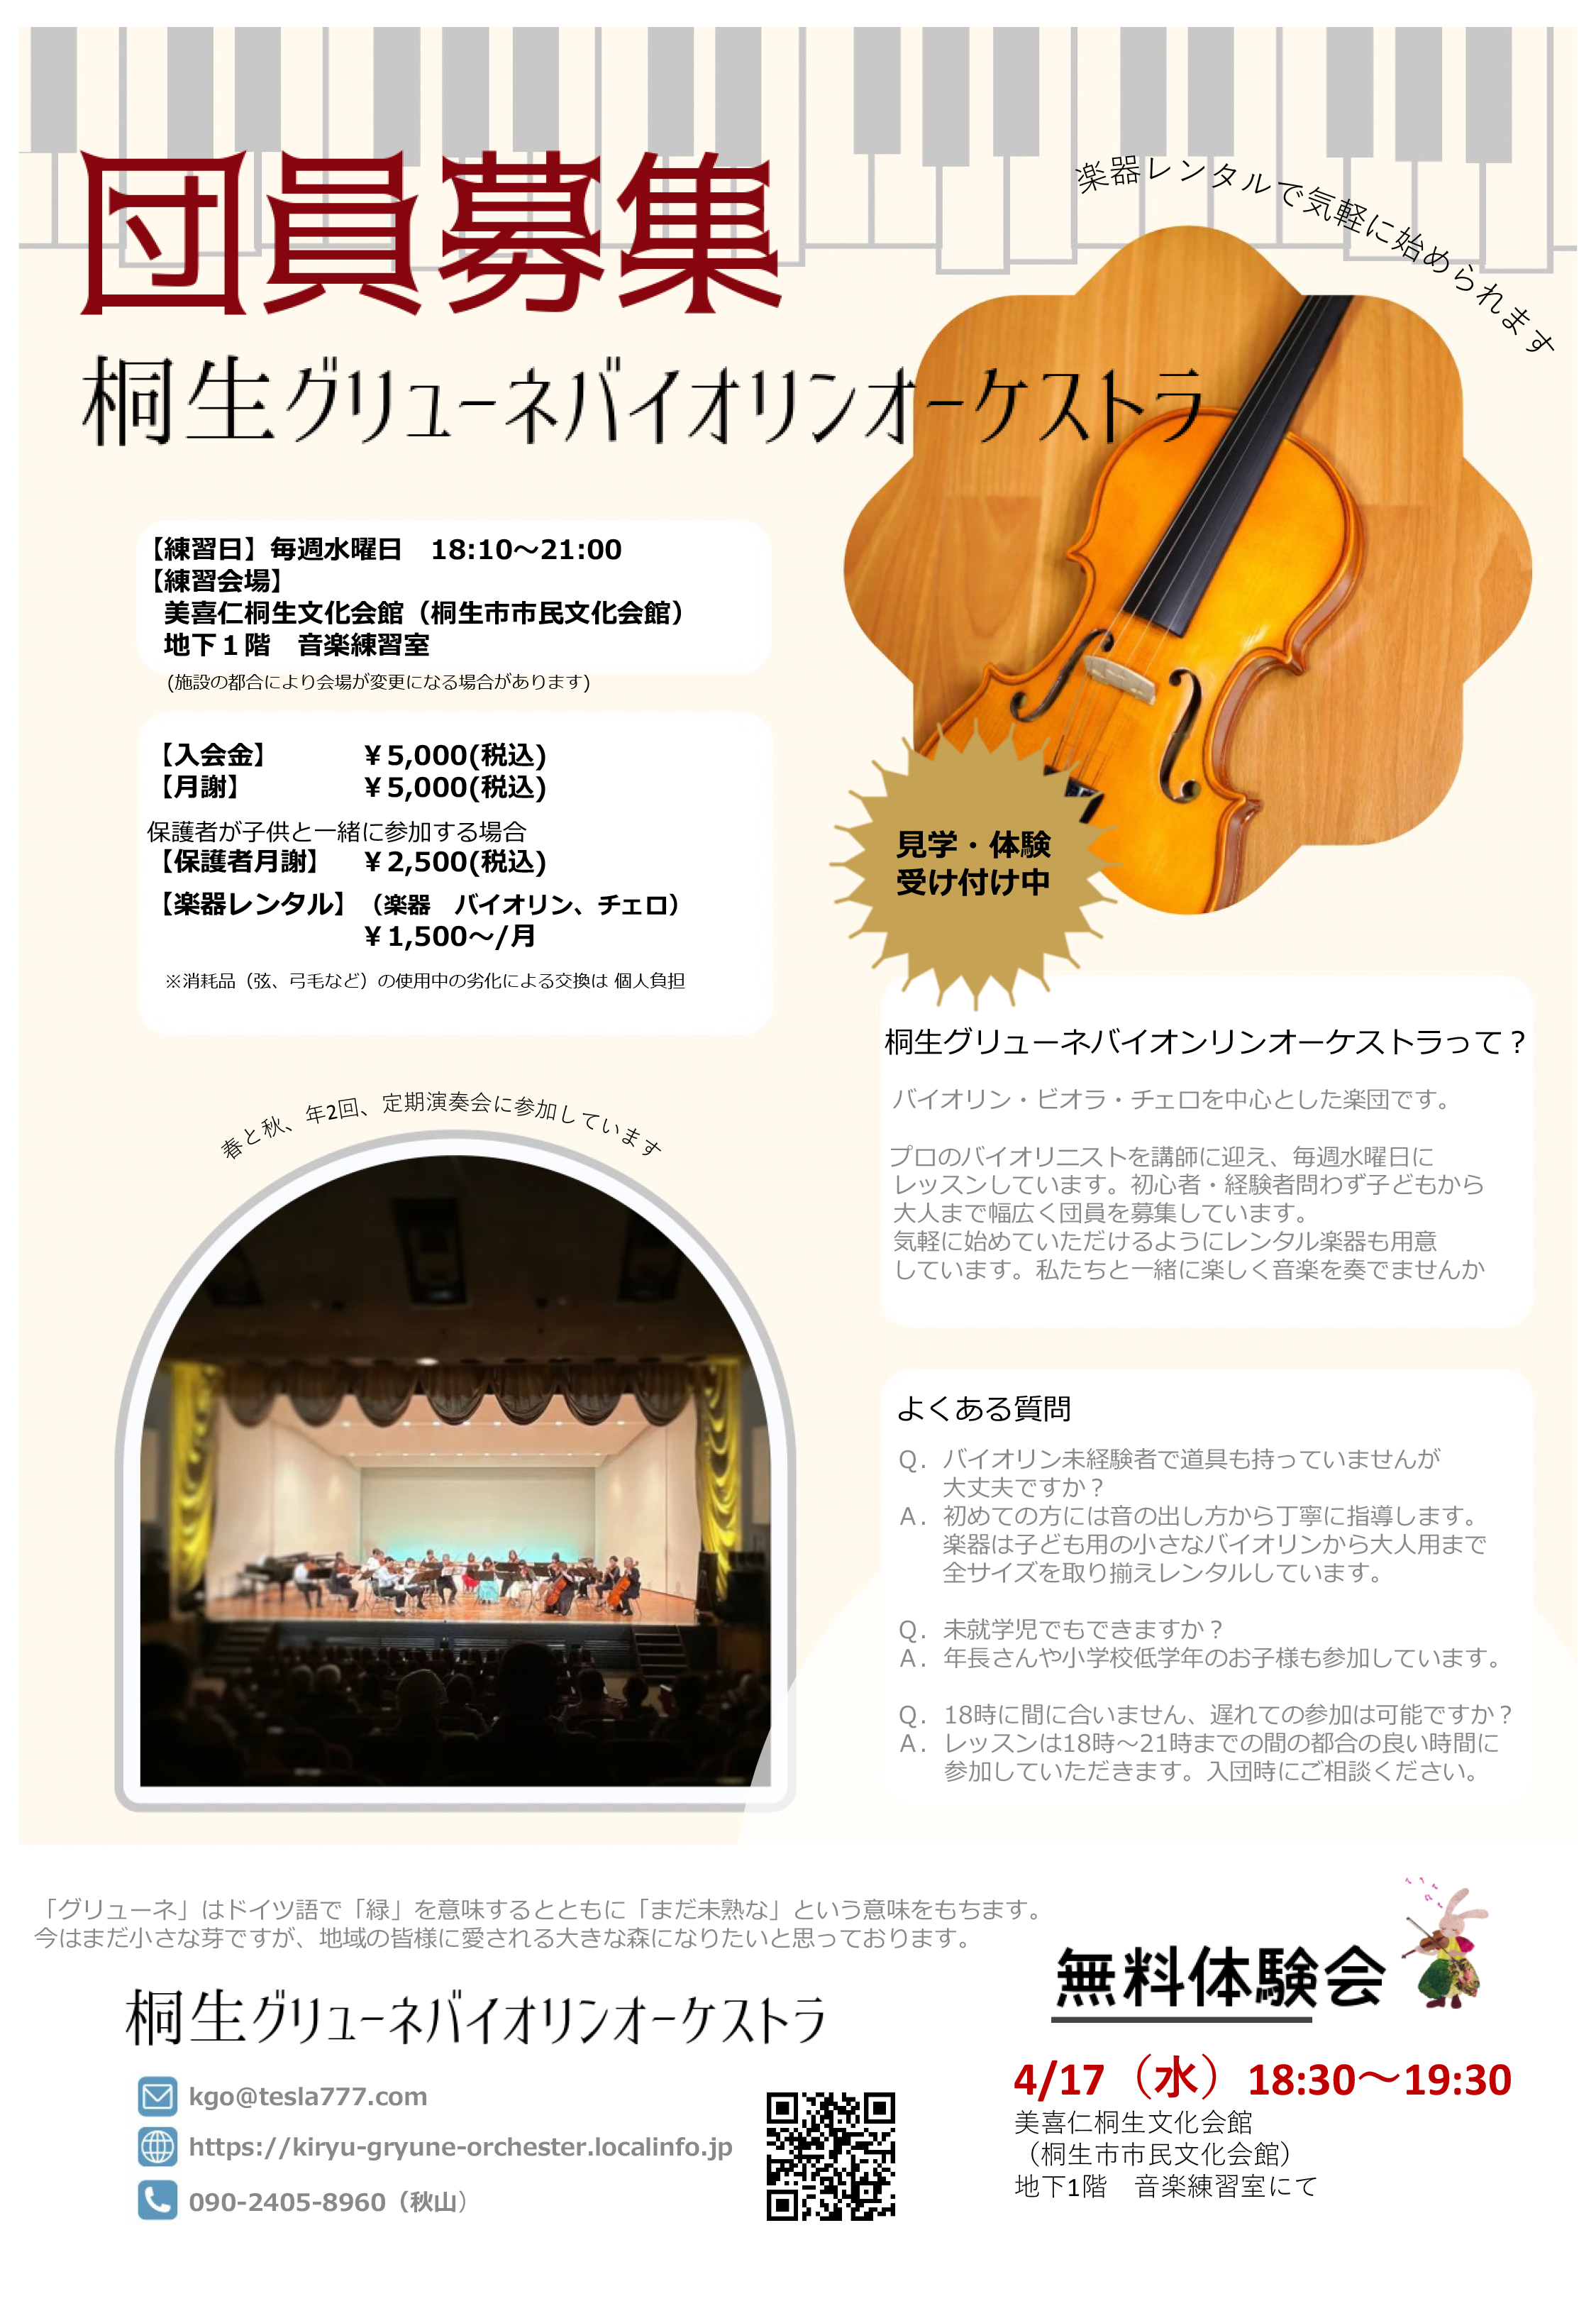 バイオリン無料体験会を行います！ | 桐生グリューネバイオリンオーケストラ